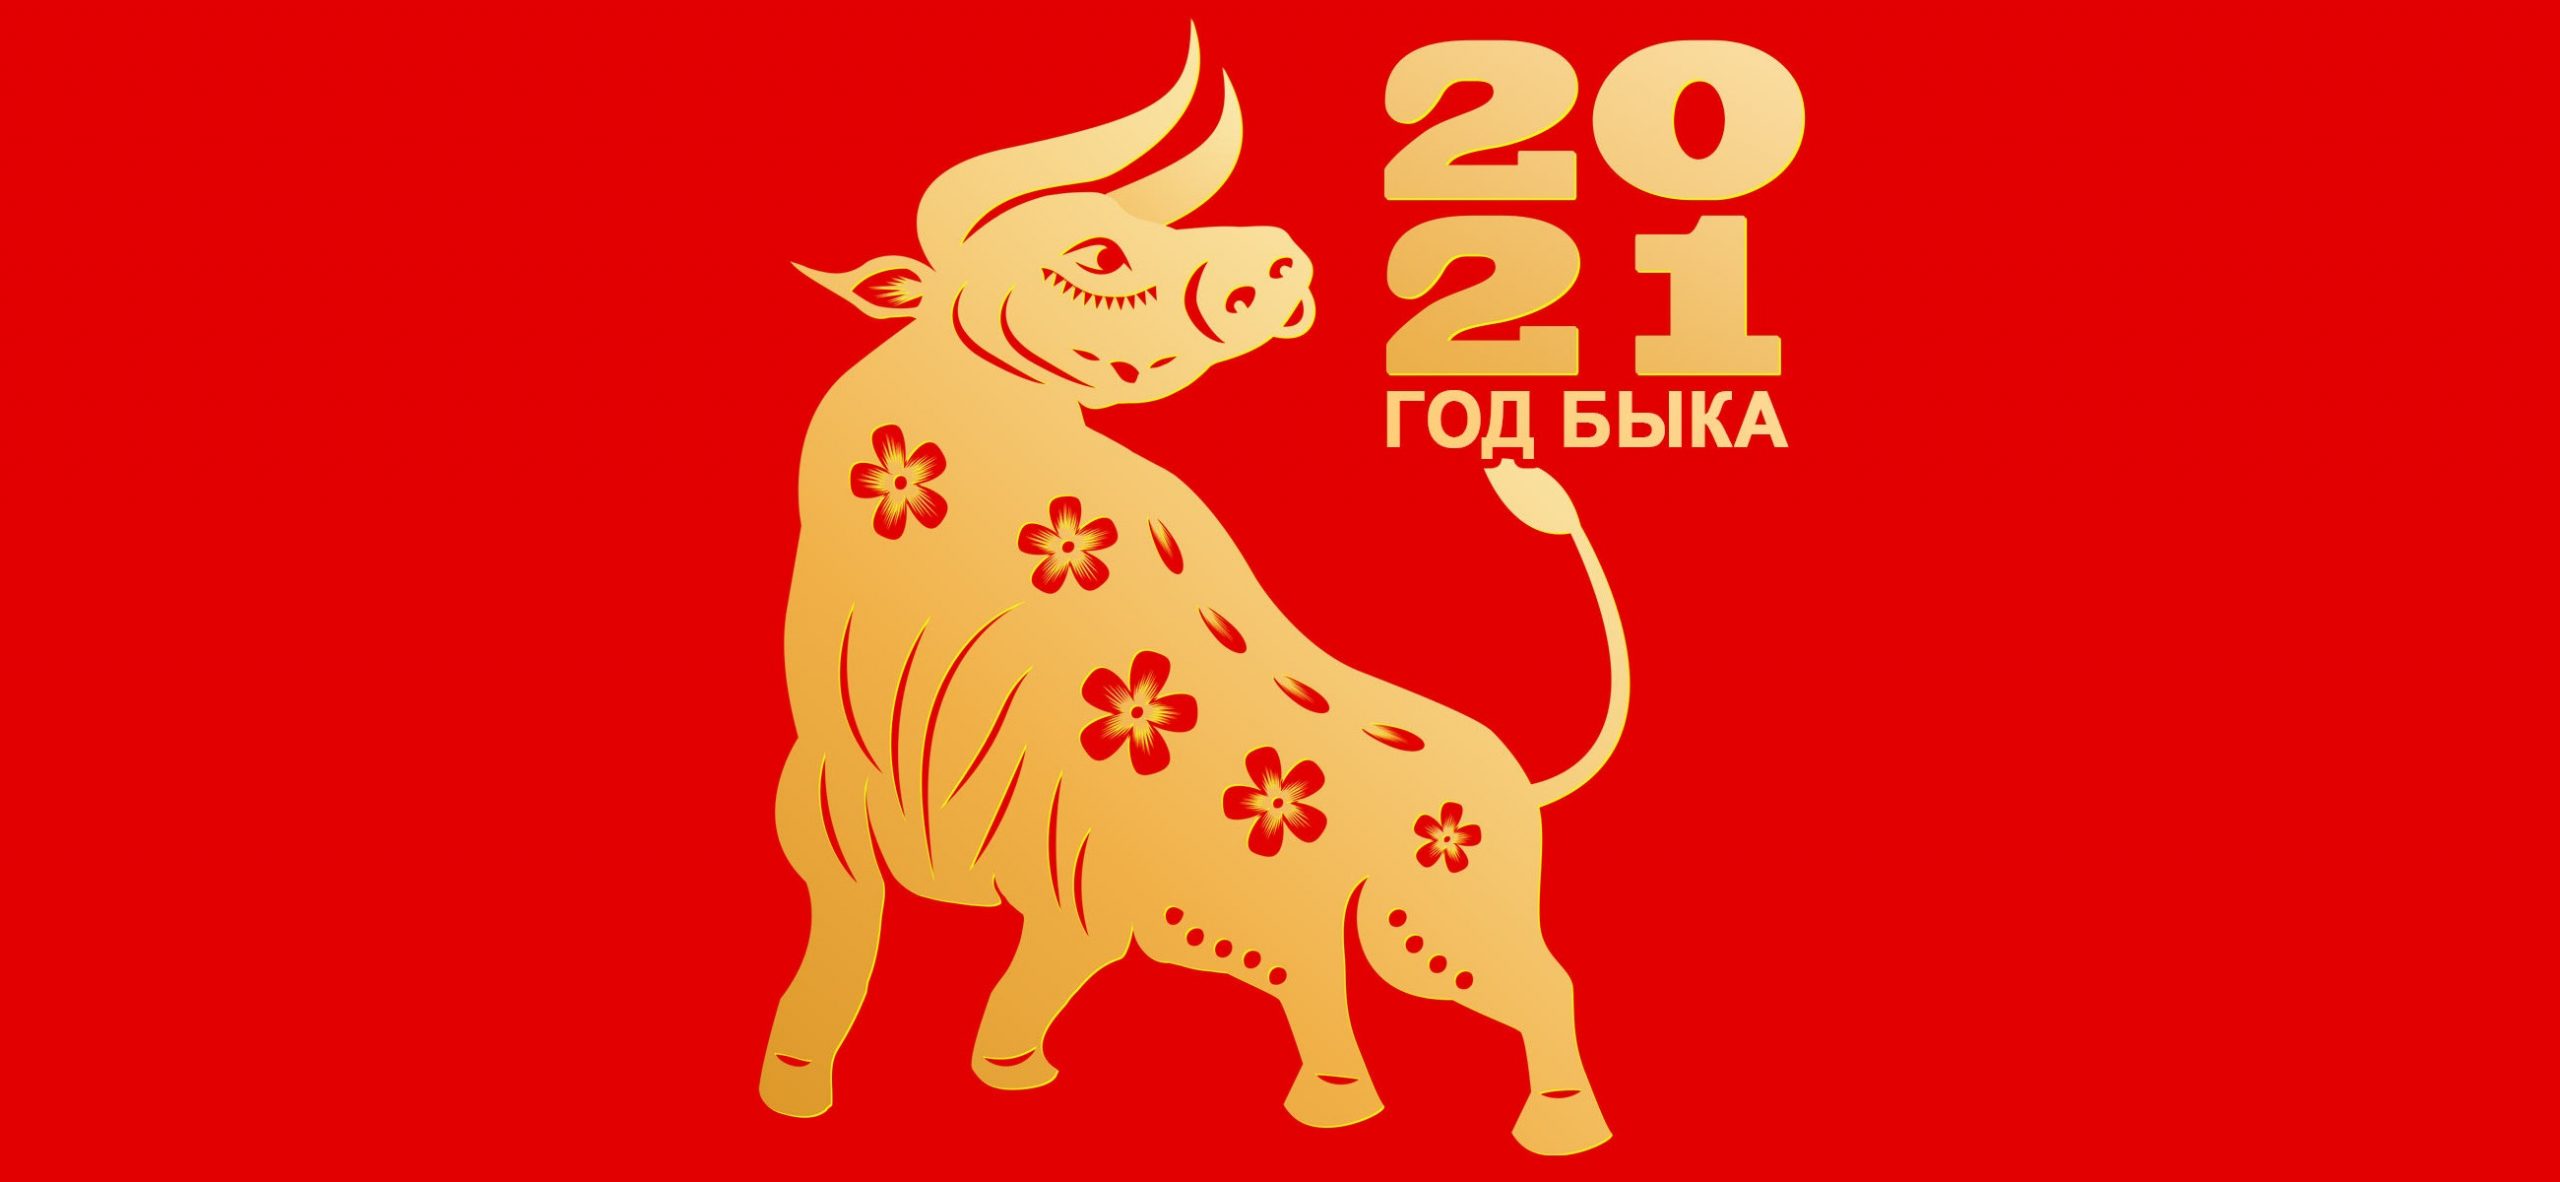 Новогодние обои быка на 2021 год   подборка картинок (8)